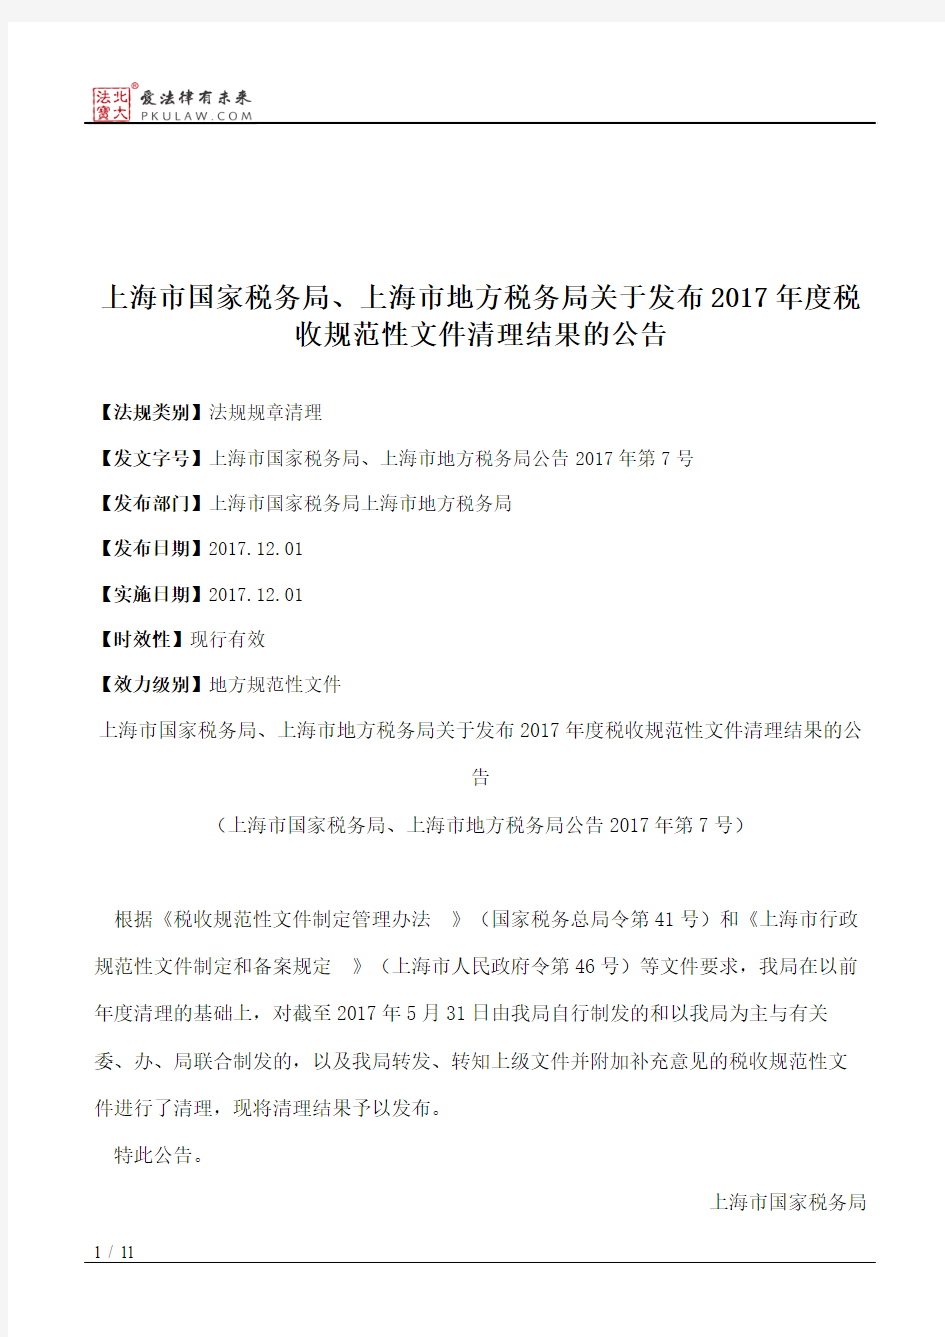 上海市国家税务局、上海市地方税务局关于发布2017年度税收规范性